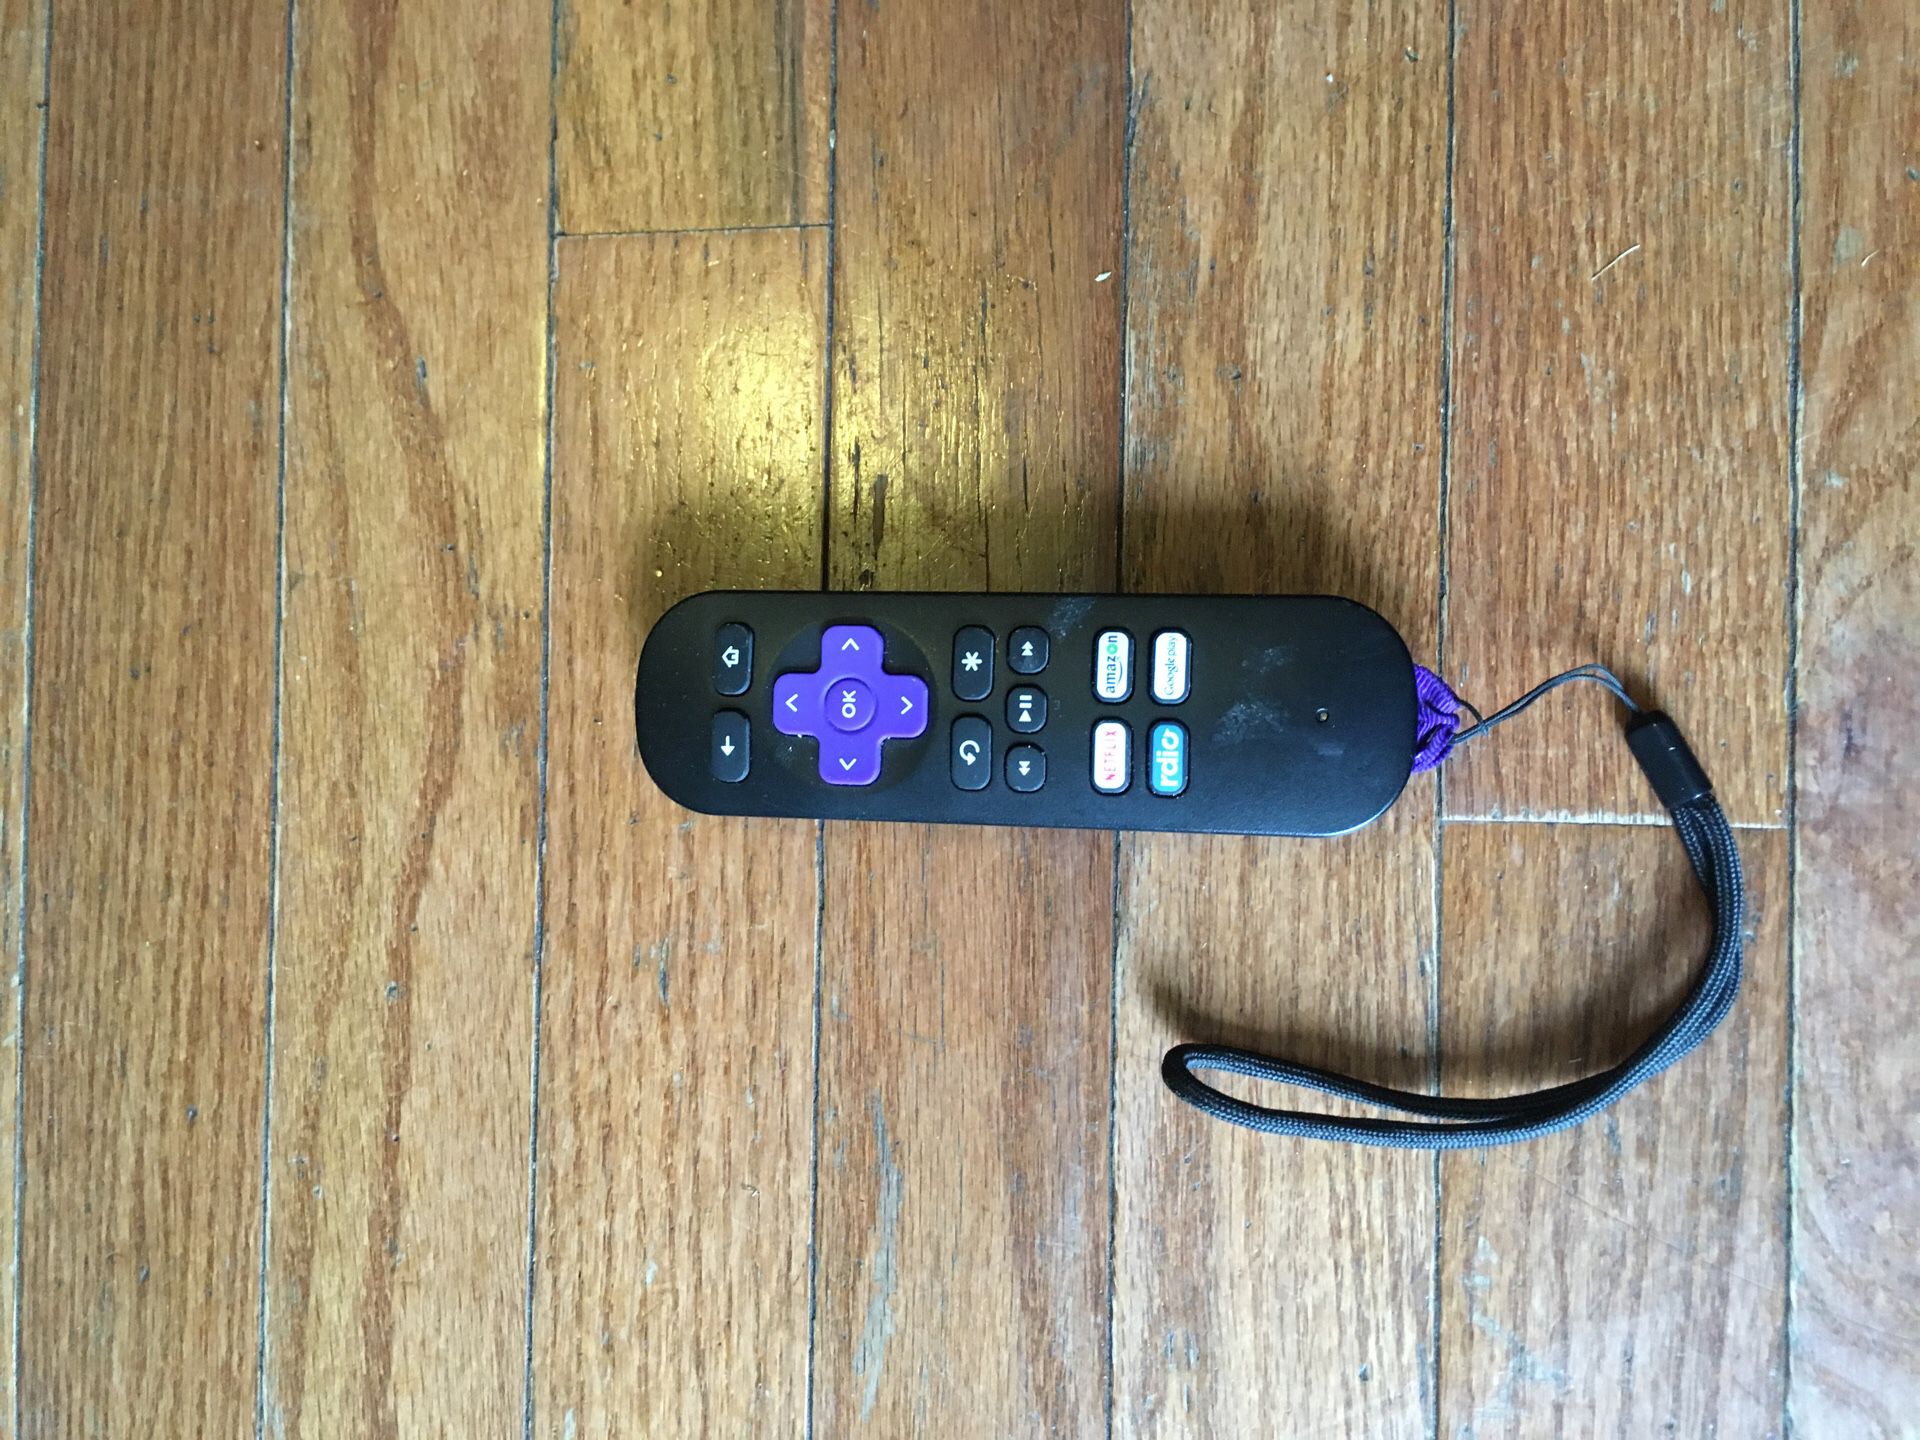 Roku RC41 Remote